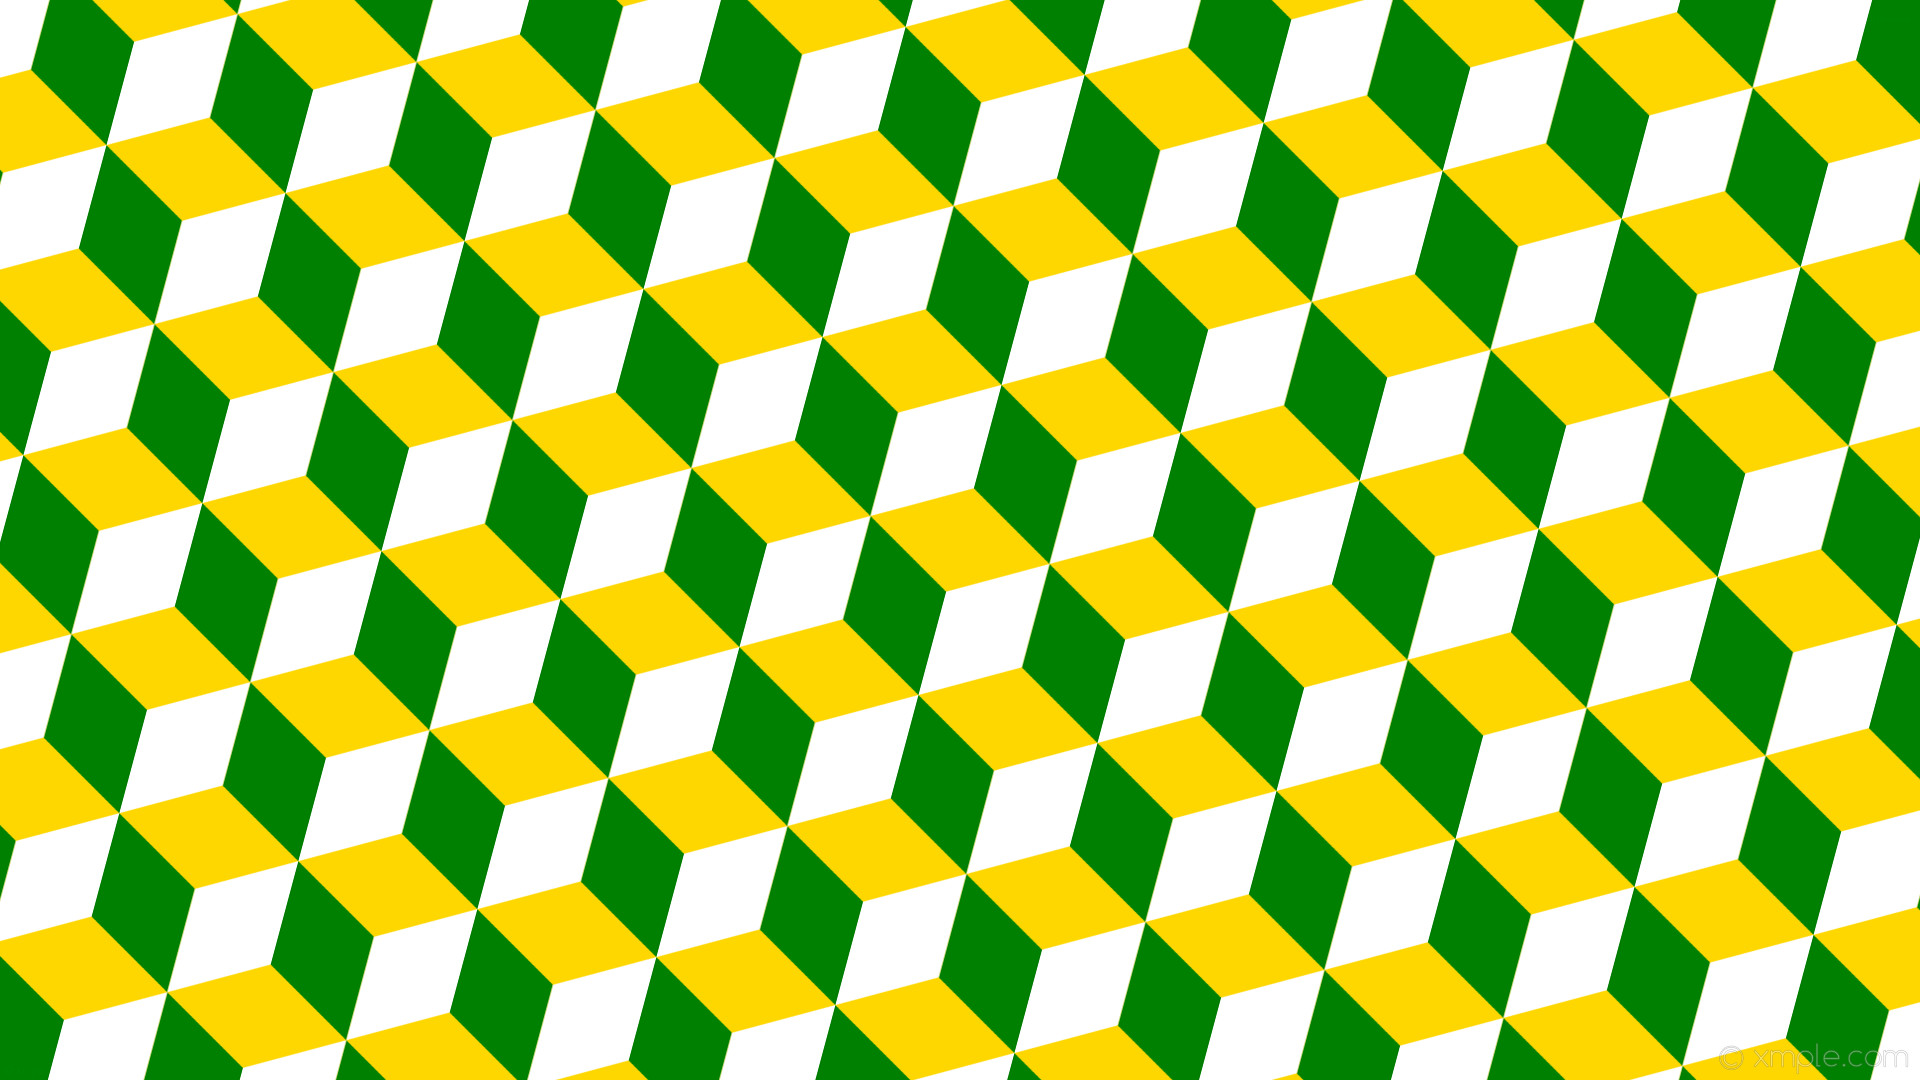 1920x1080 wallpaper 3d cubes yellow green white gold #ffd700 #008000 #ffffff 165Â°  107px